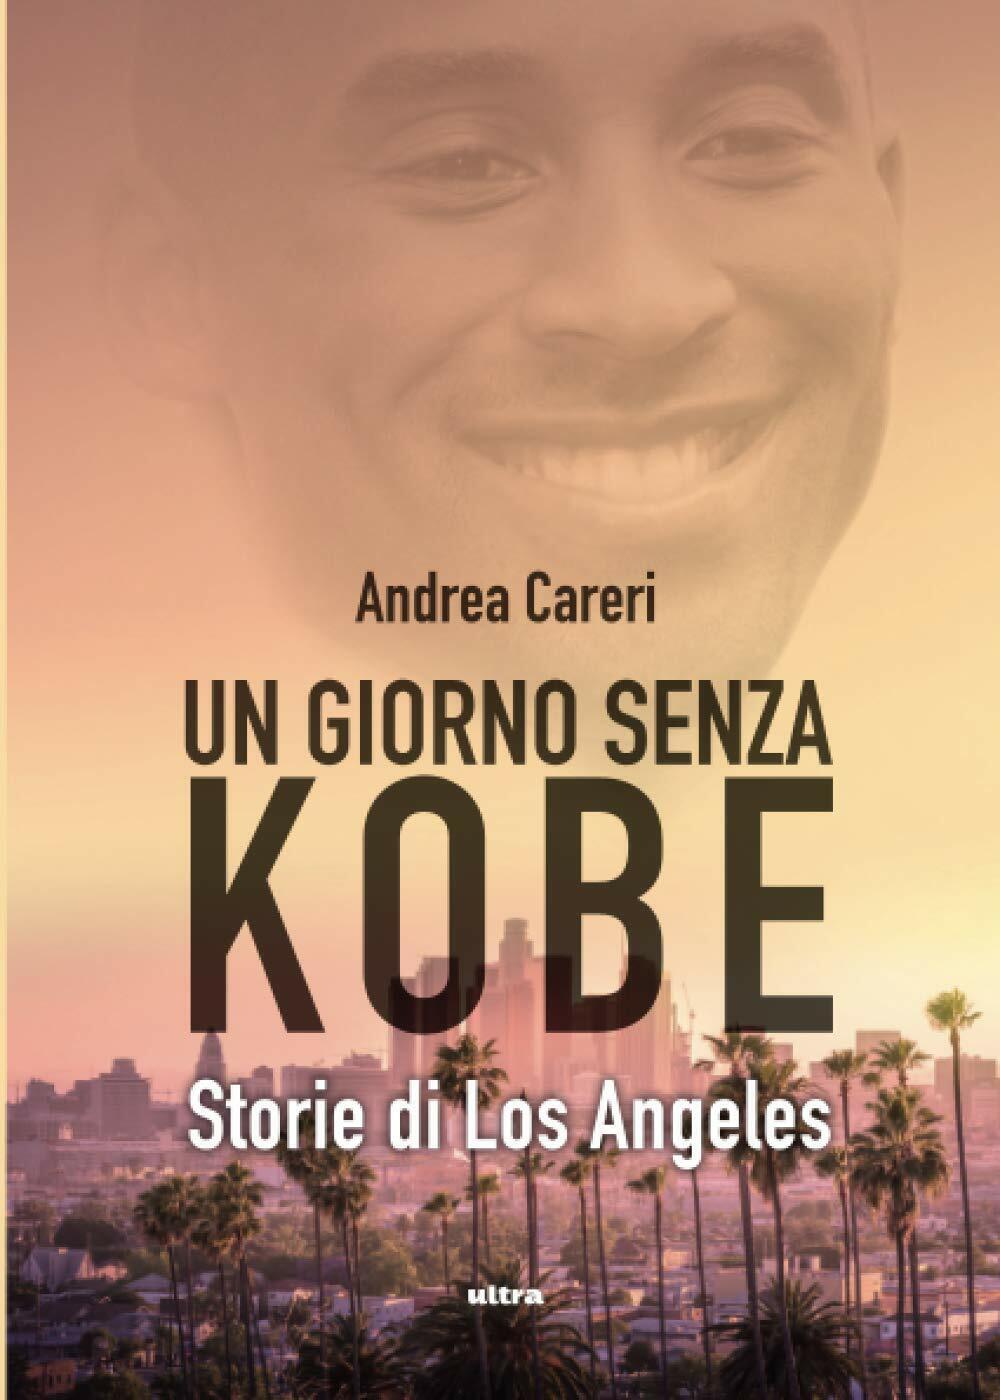 UN GIORNO SENZA KOBE. STORIE DI LOS ANGELES - Andrea Careri - Ultra, 2020